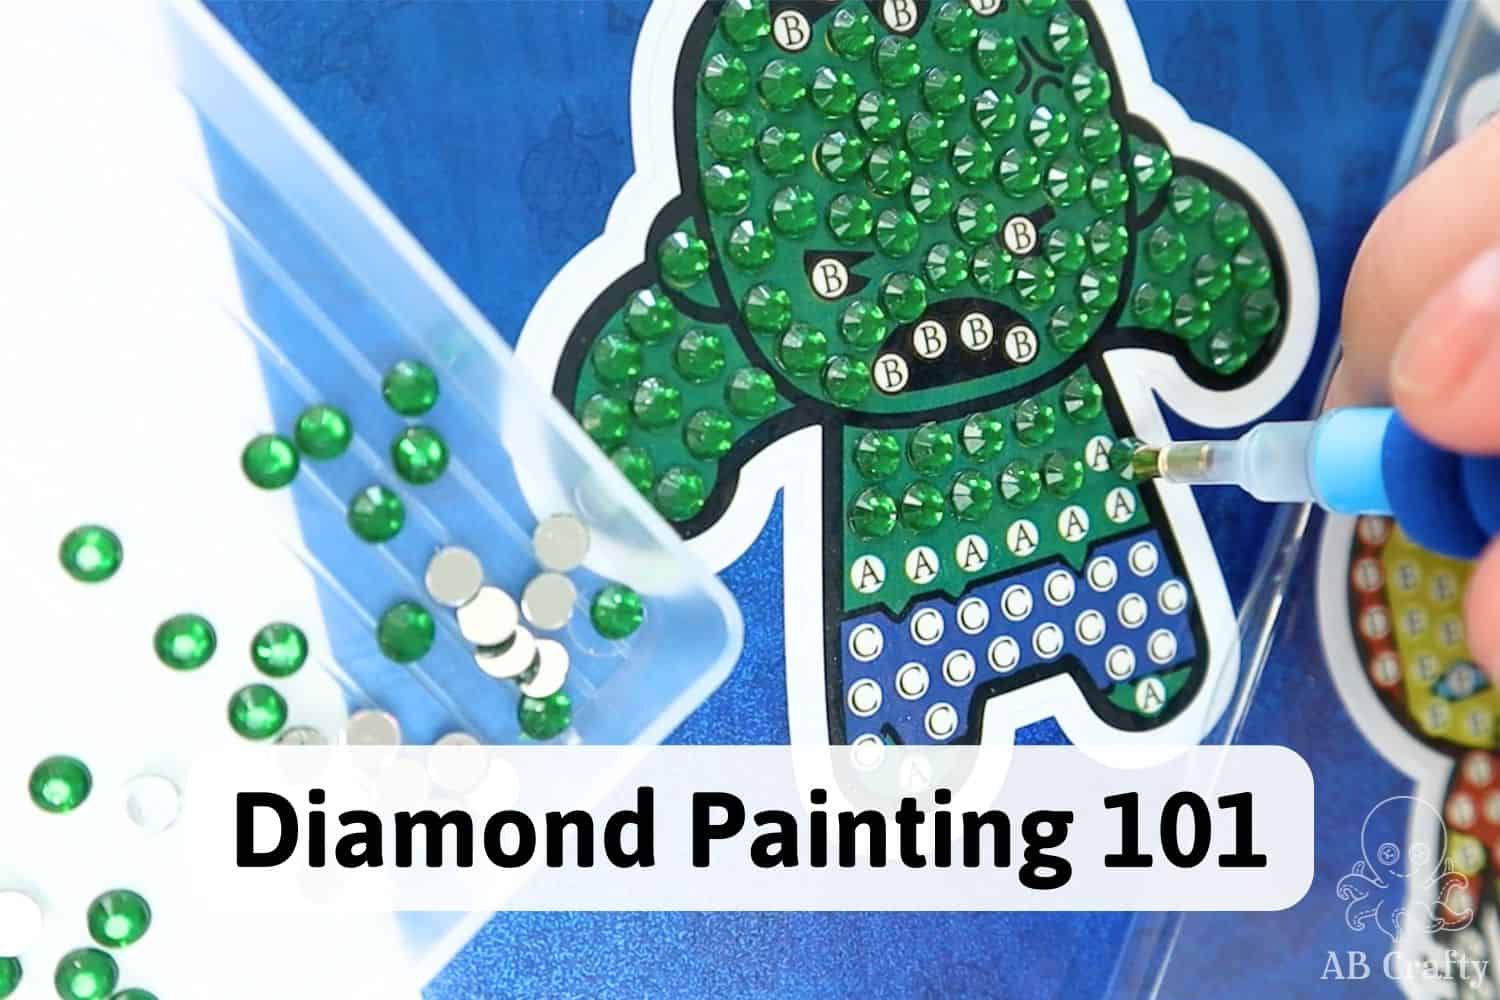 Where to find Pokemon Diamond Paintings. : r/diamondpainting